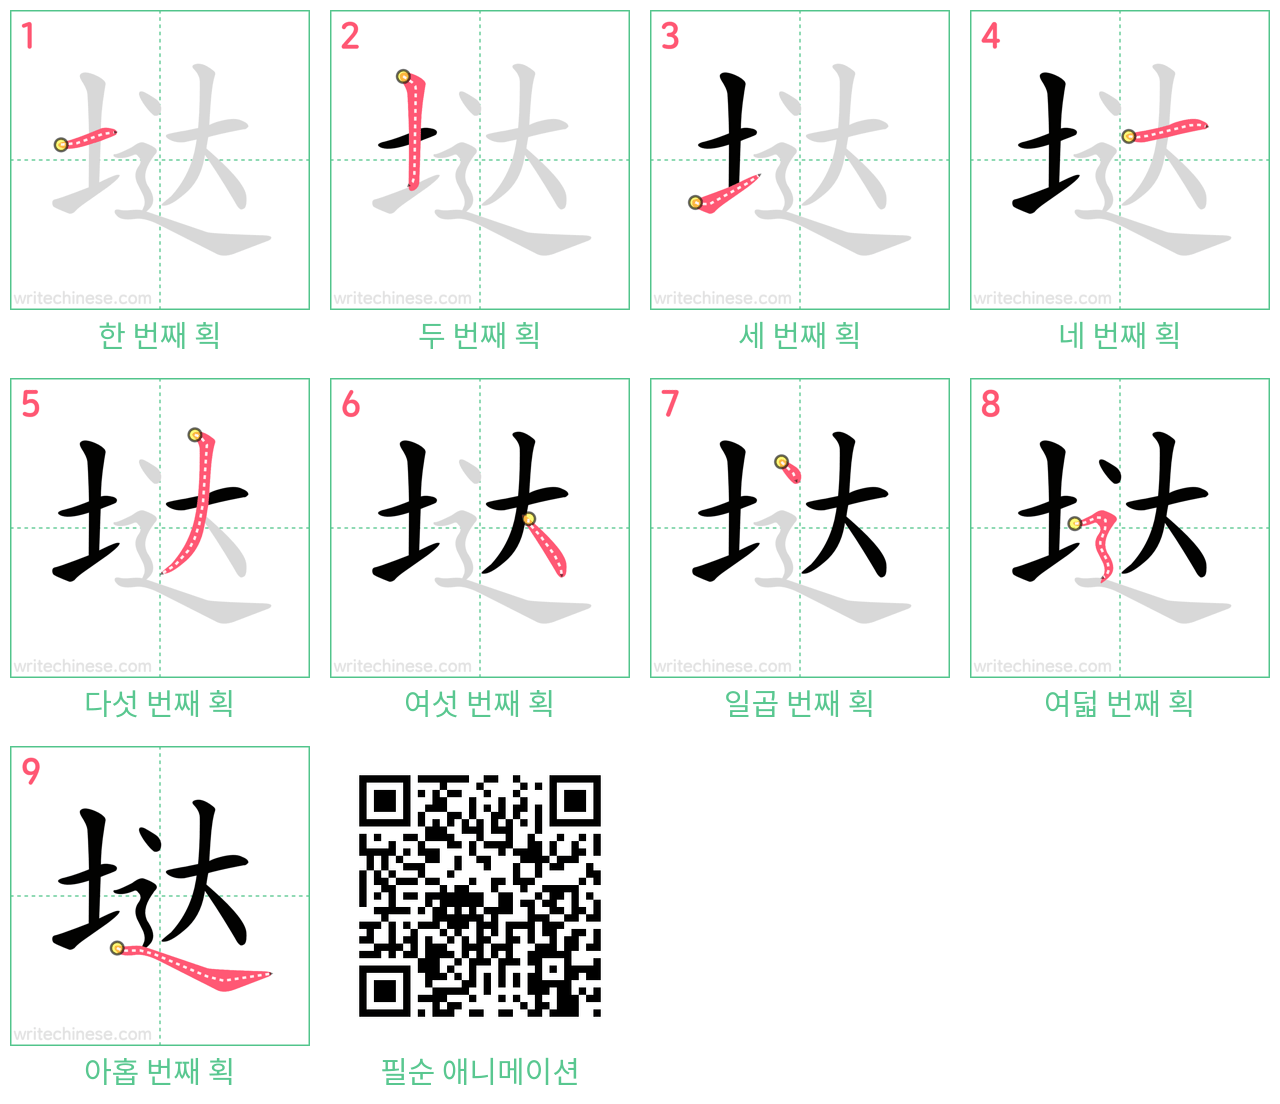 垯 step-by-step stroke order diagrams